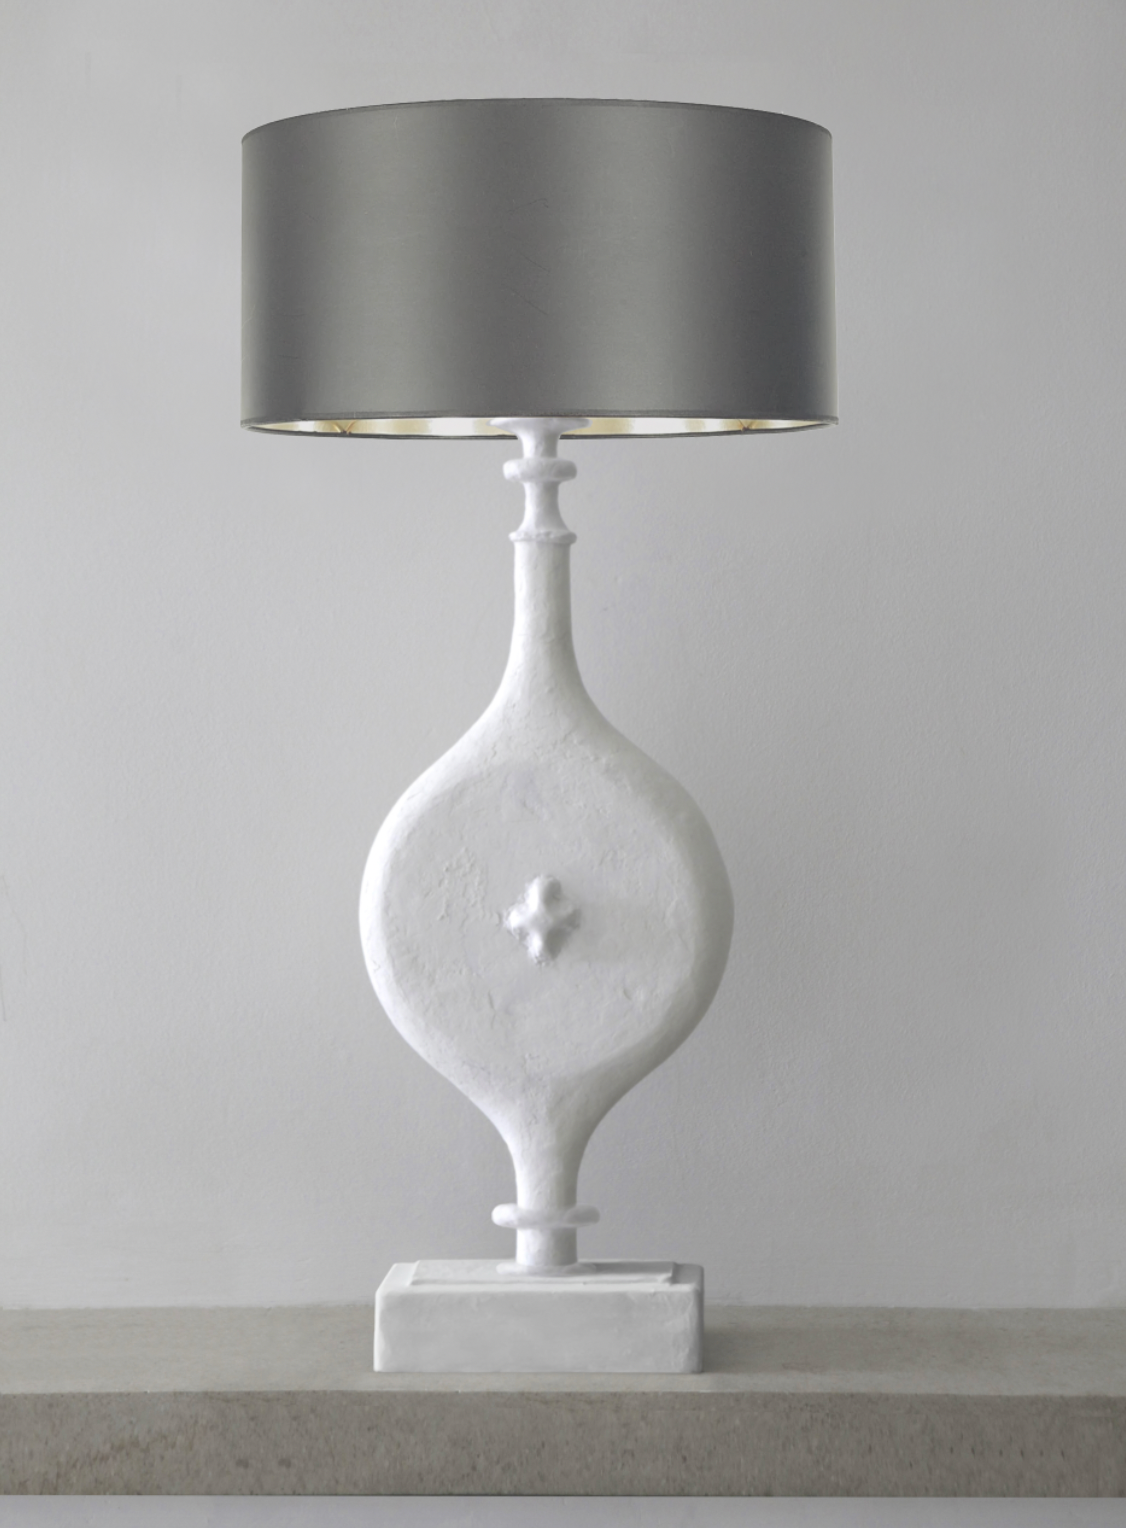 The "Torino" lamp